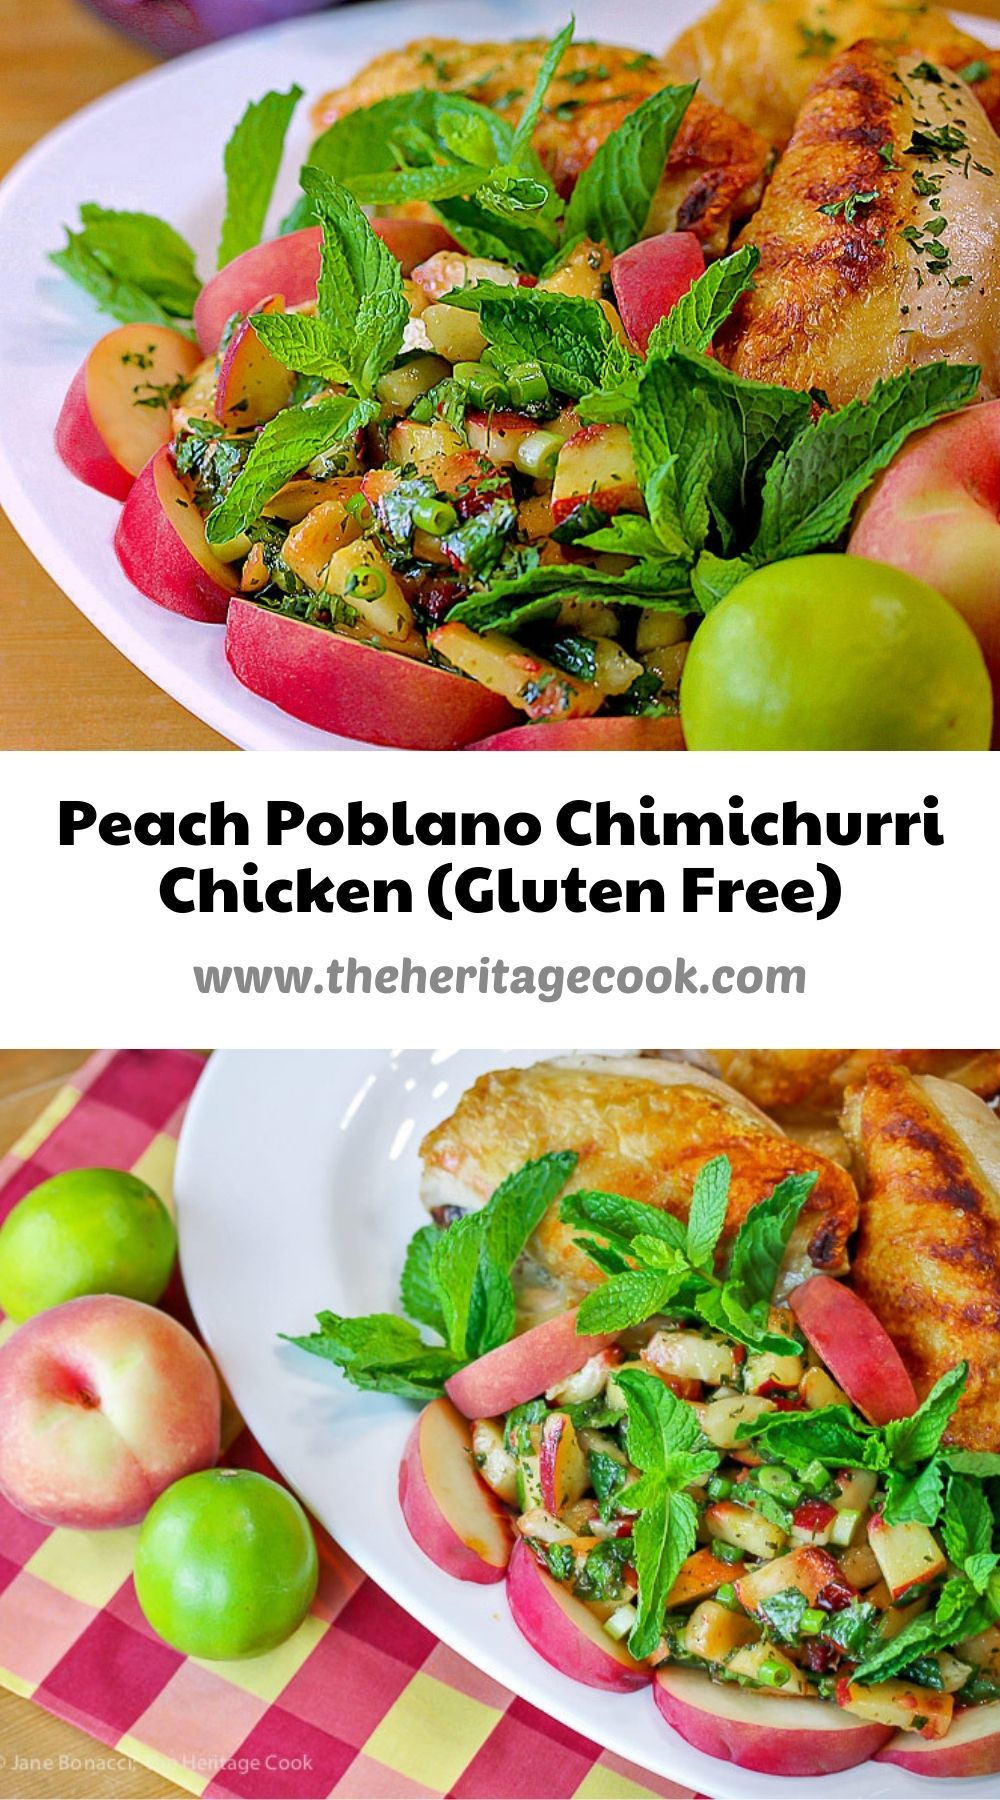 Peach Poblano Chimichurri Chicken © 2021 Jane Bonacci, The Heritage Cook